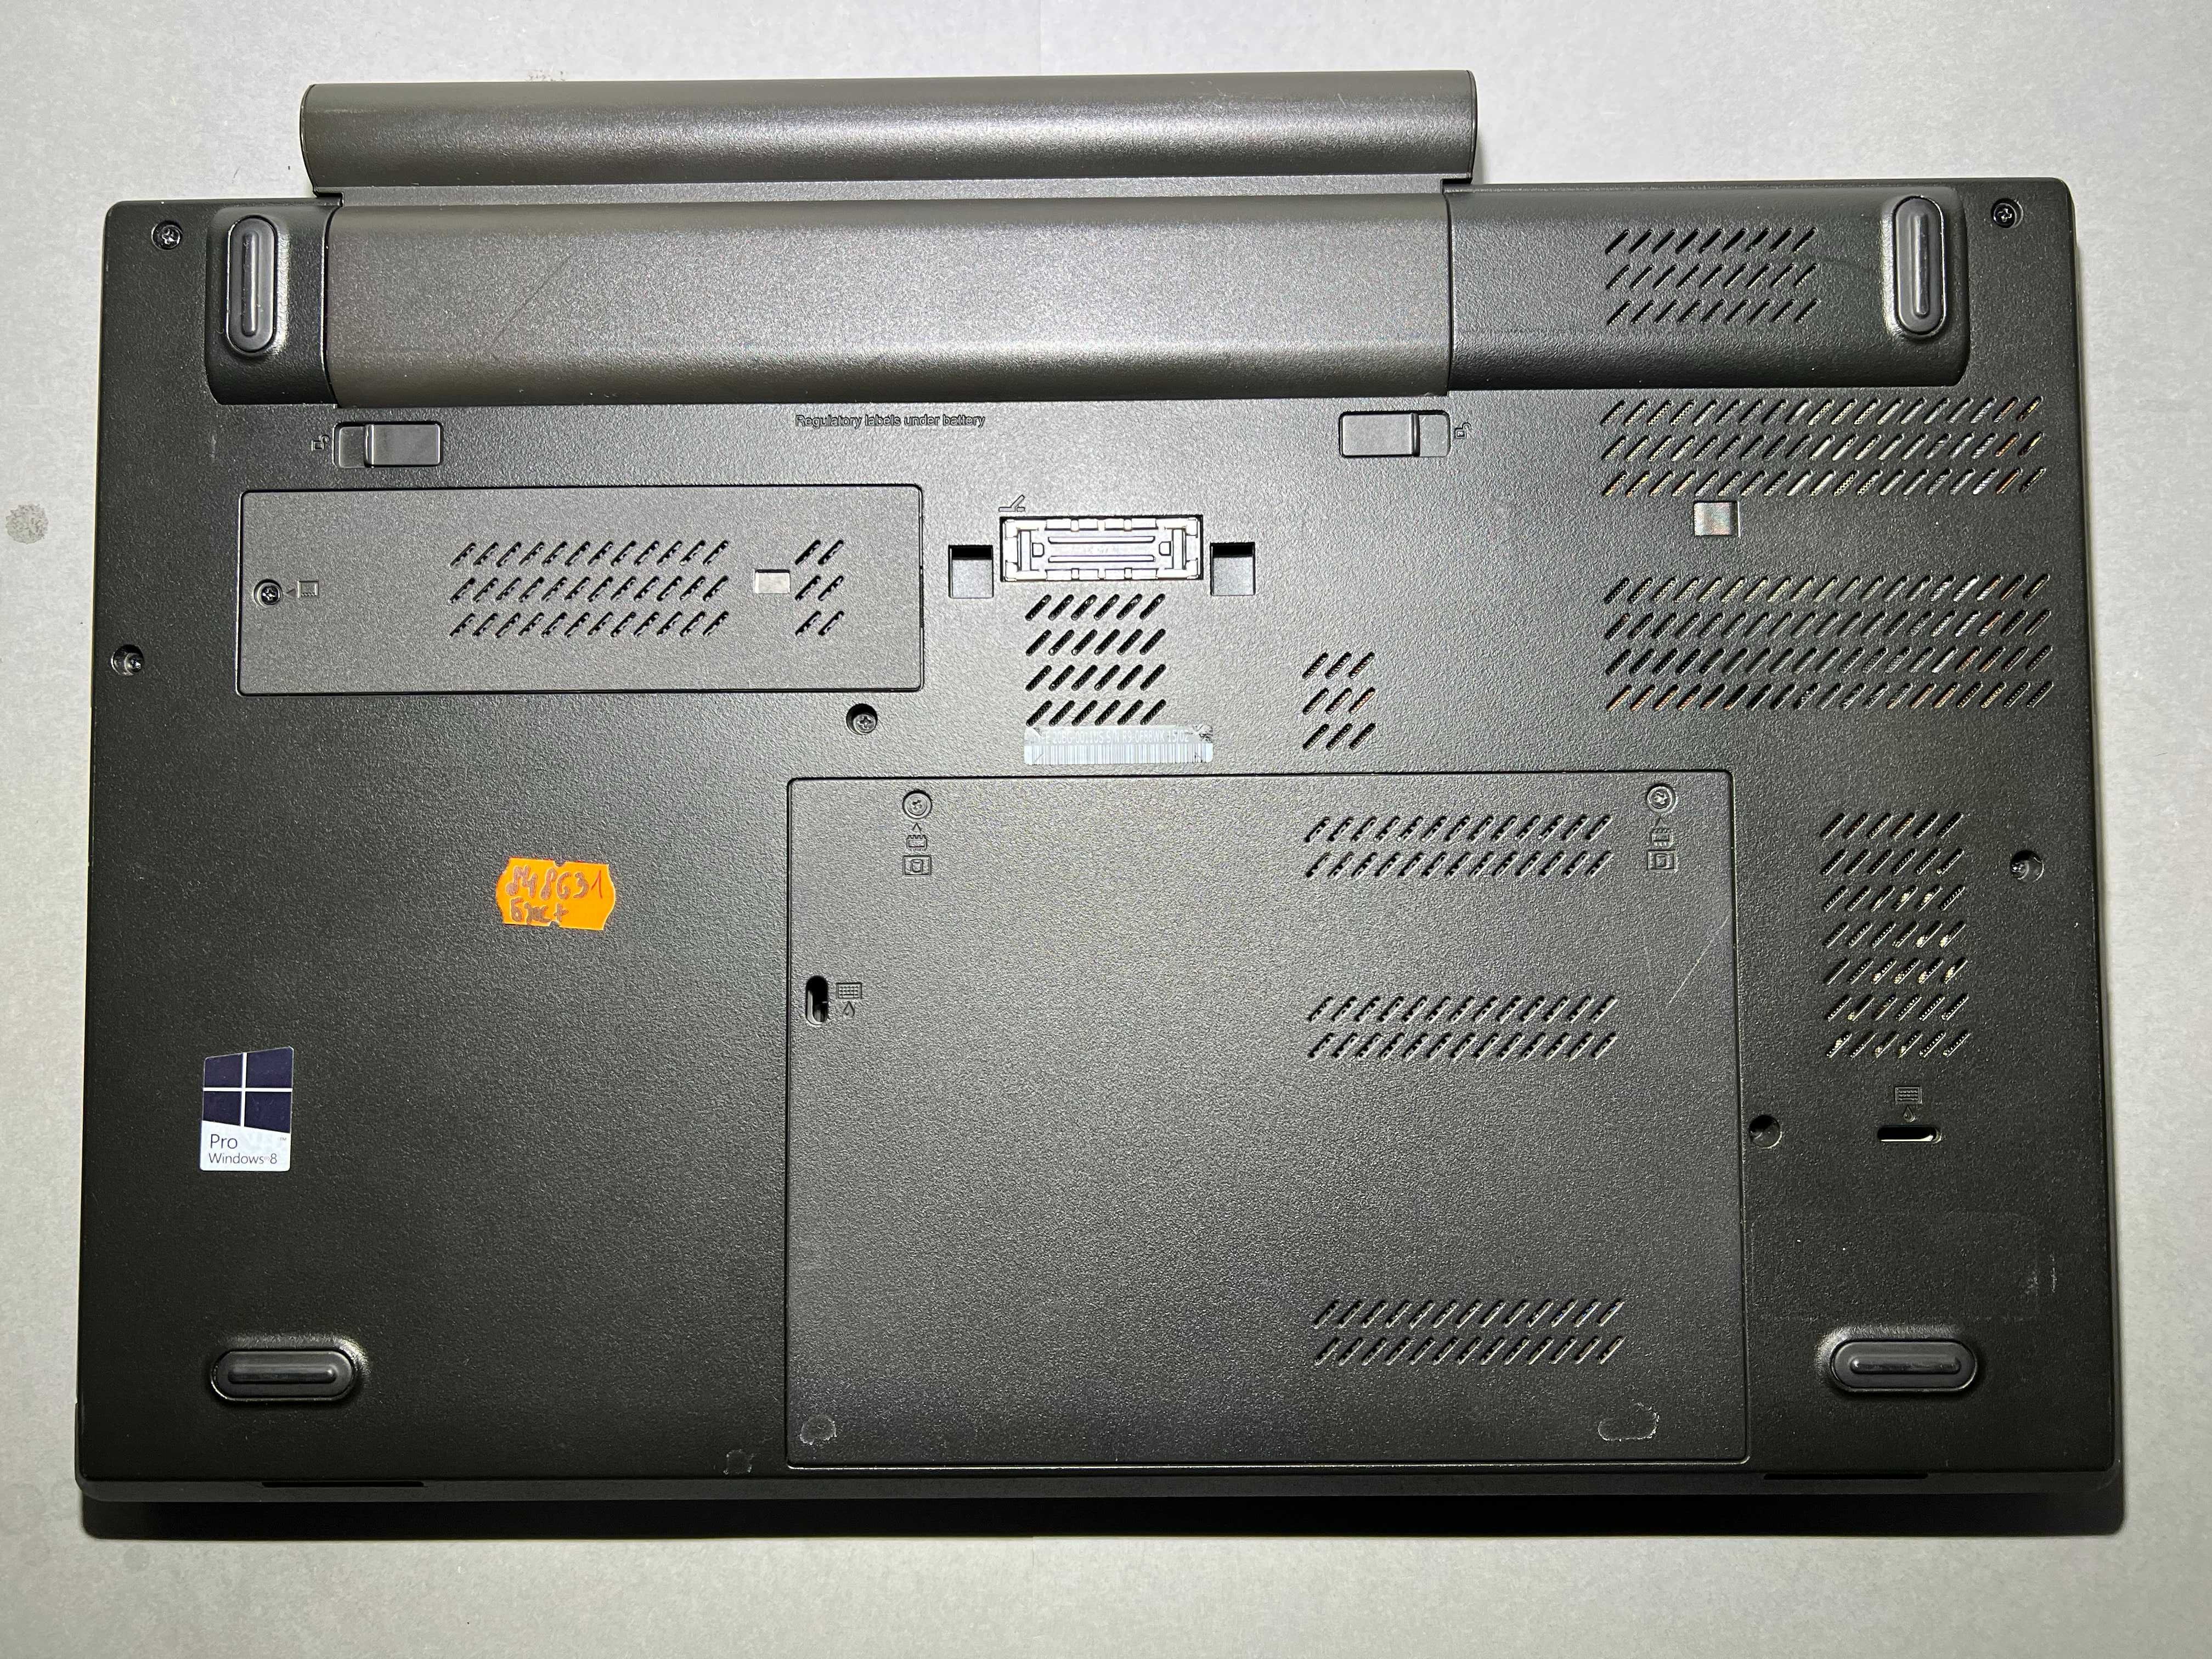 Lenovo ThinkPad W540/i7-4700MQ/32GB/SSD 500GB/nVidia K1100M, 2GB/FHD